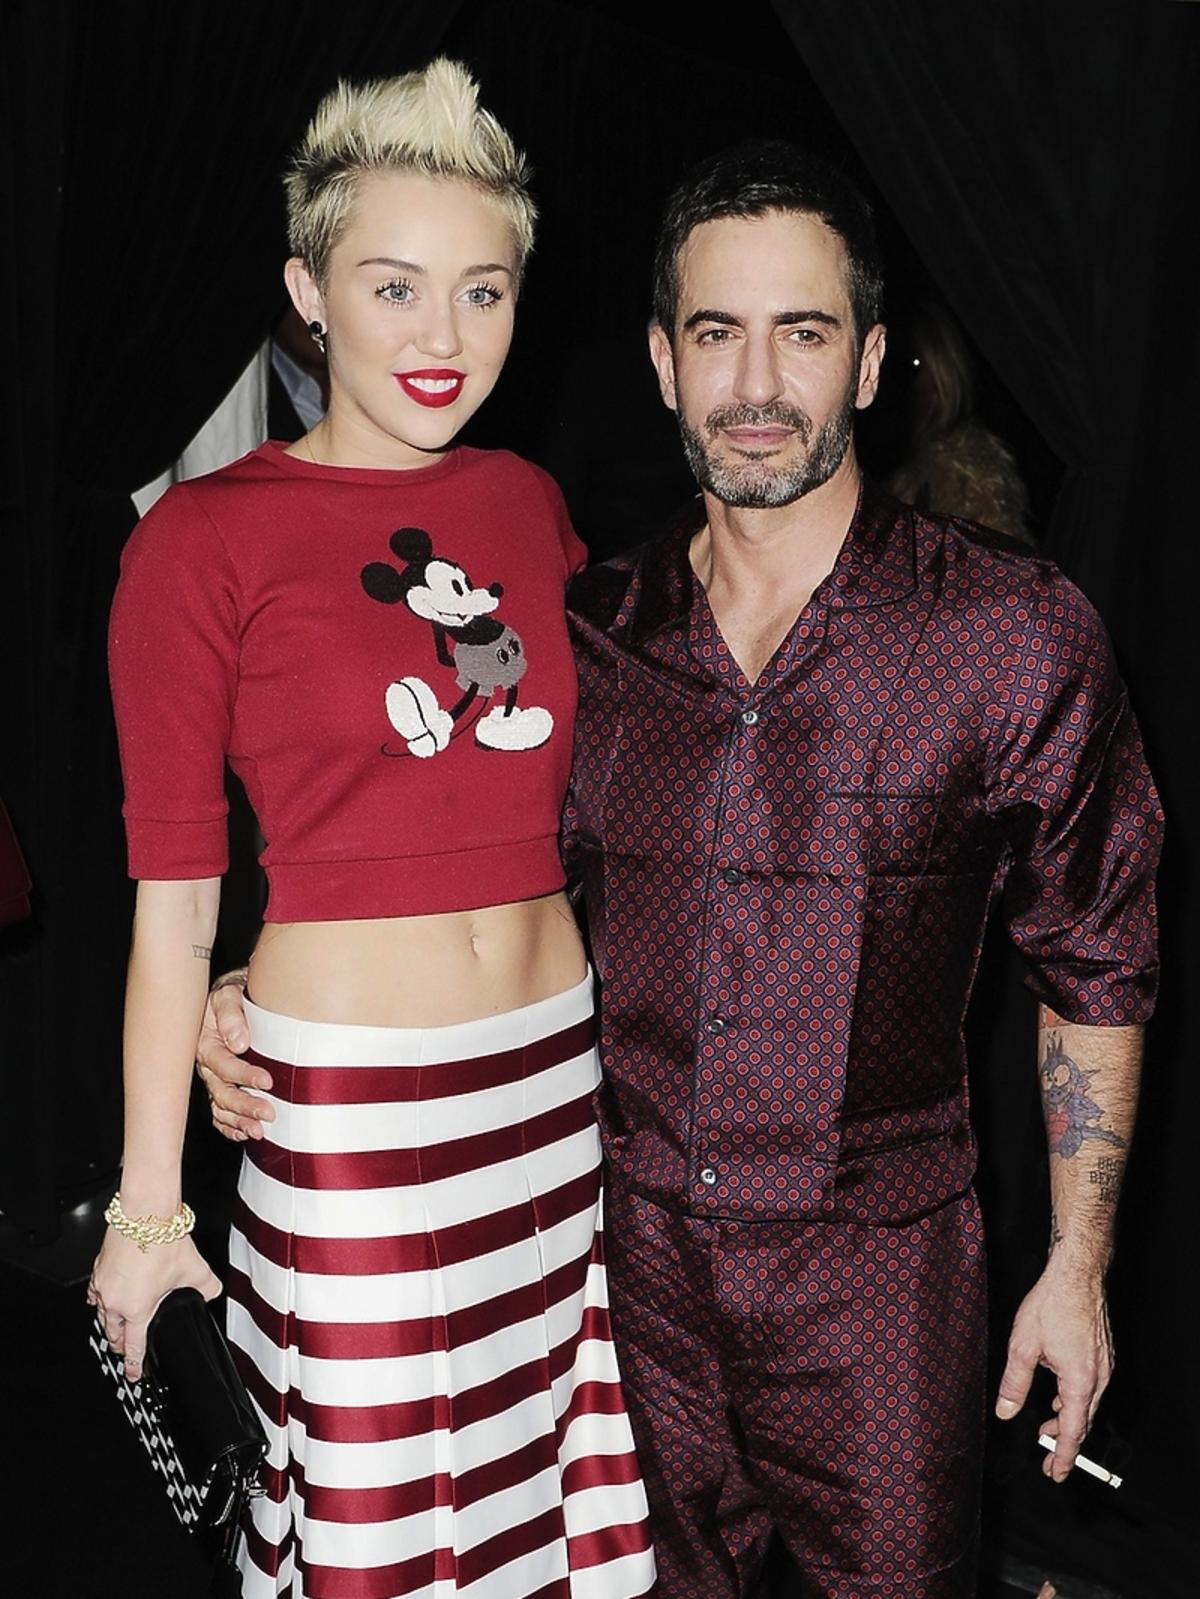 Miley Cyrus w czerwonej bluzce z Myszką Miki i spódnicy w paski